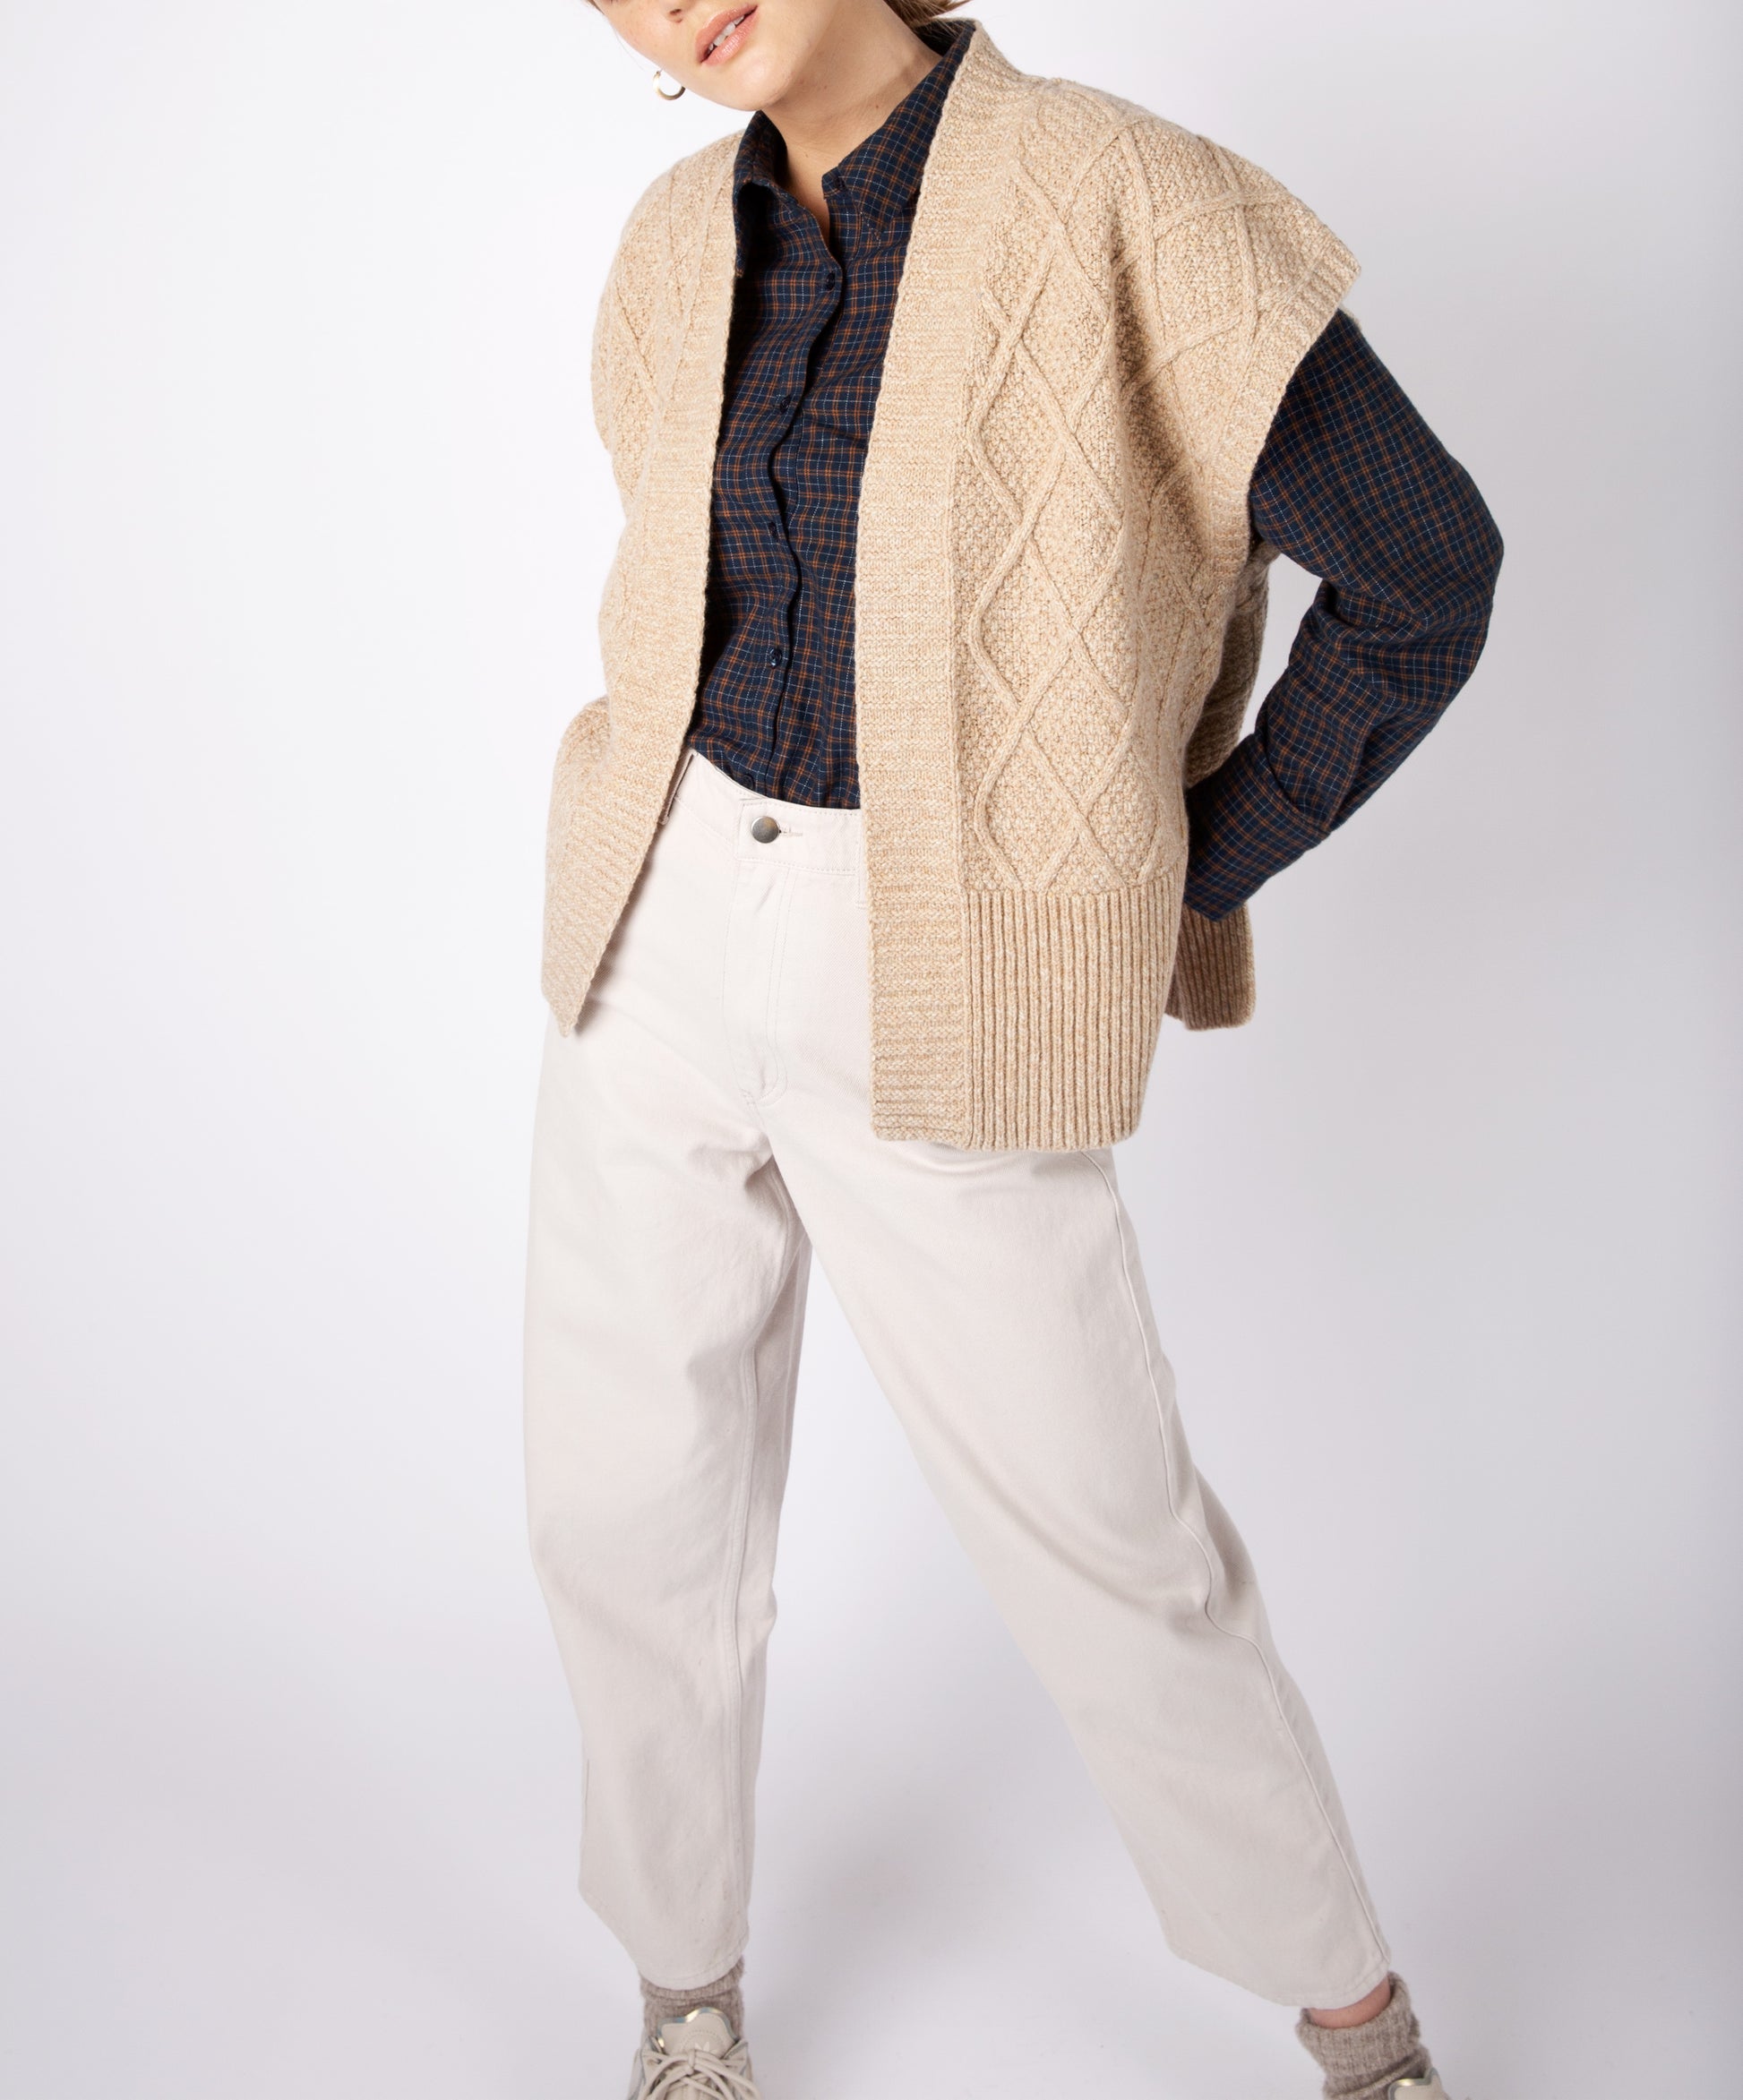 IrelandsEye Knitwear Women's Knitted 'Nettle' Diamond Pattern Vest in Seashell